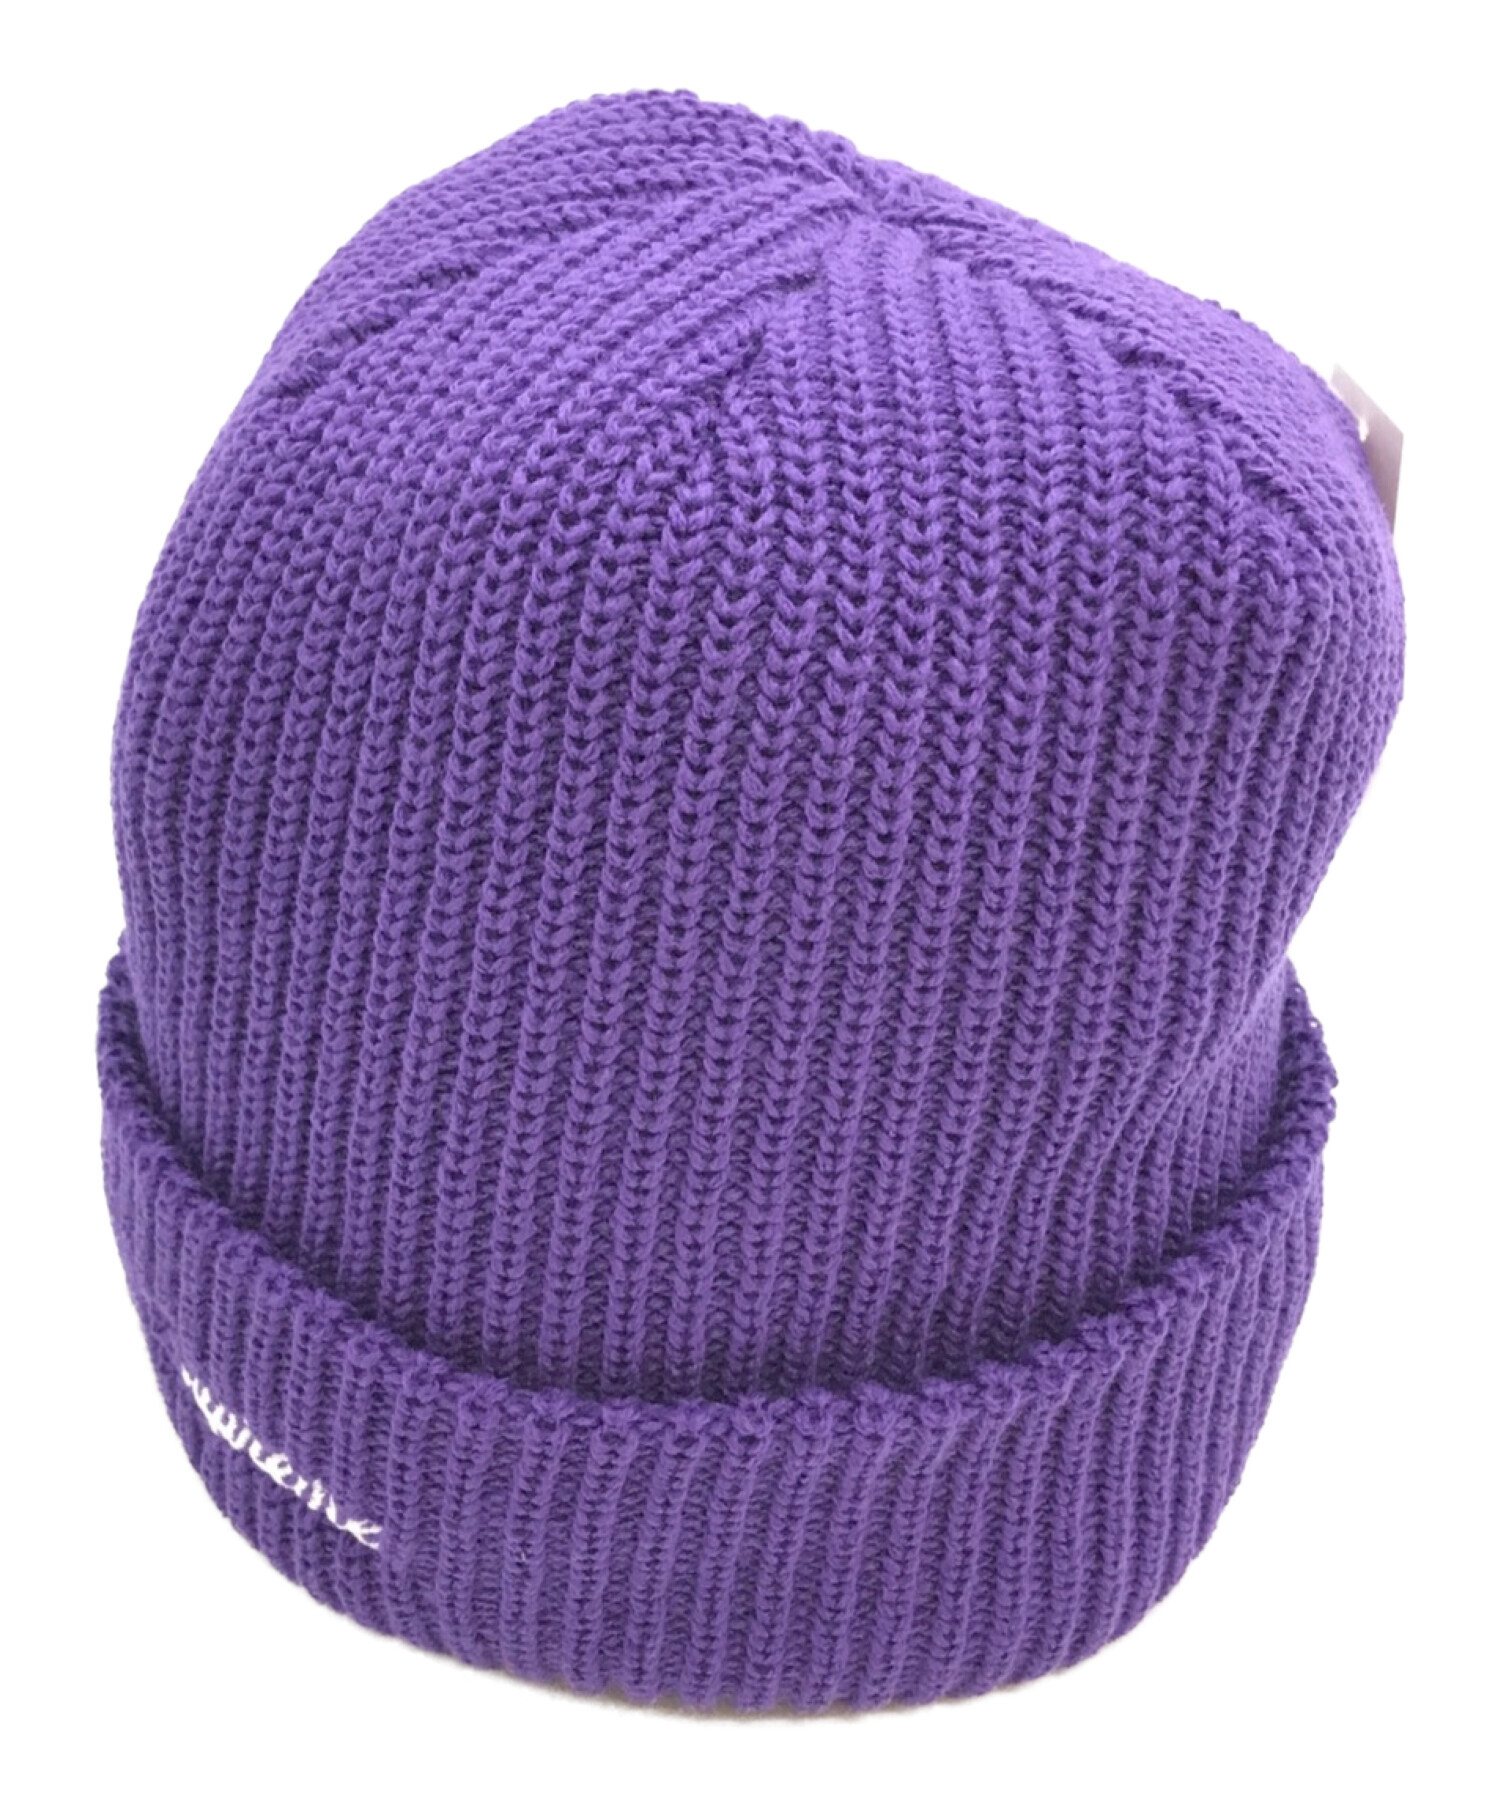 【特売安い】シュプリーム Loose Gauge ビーニー 紫 帽子